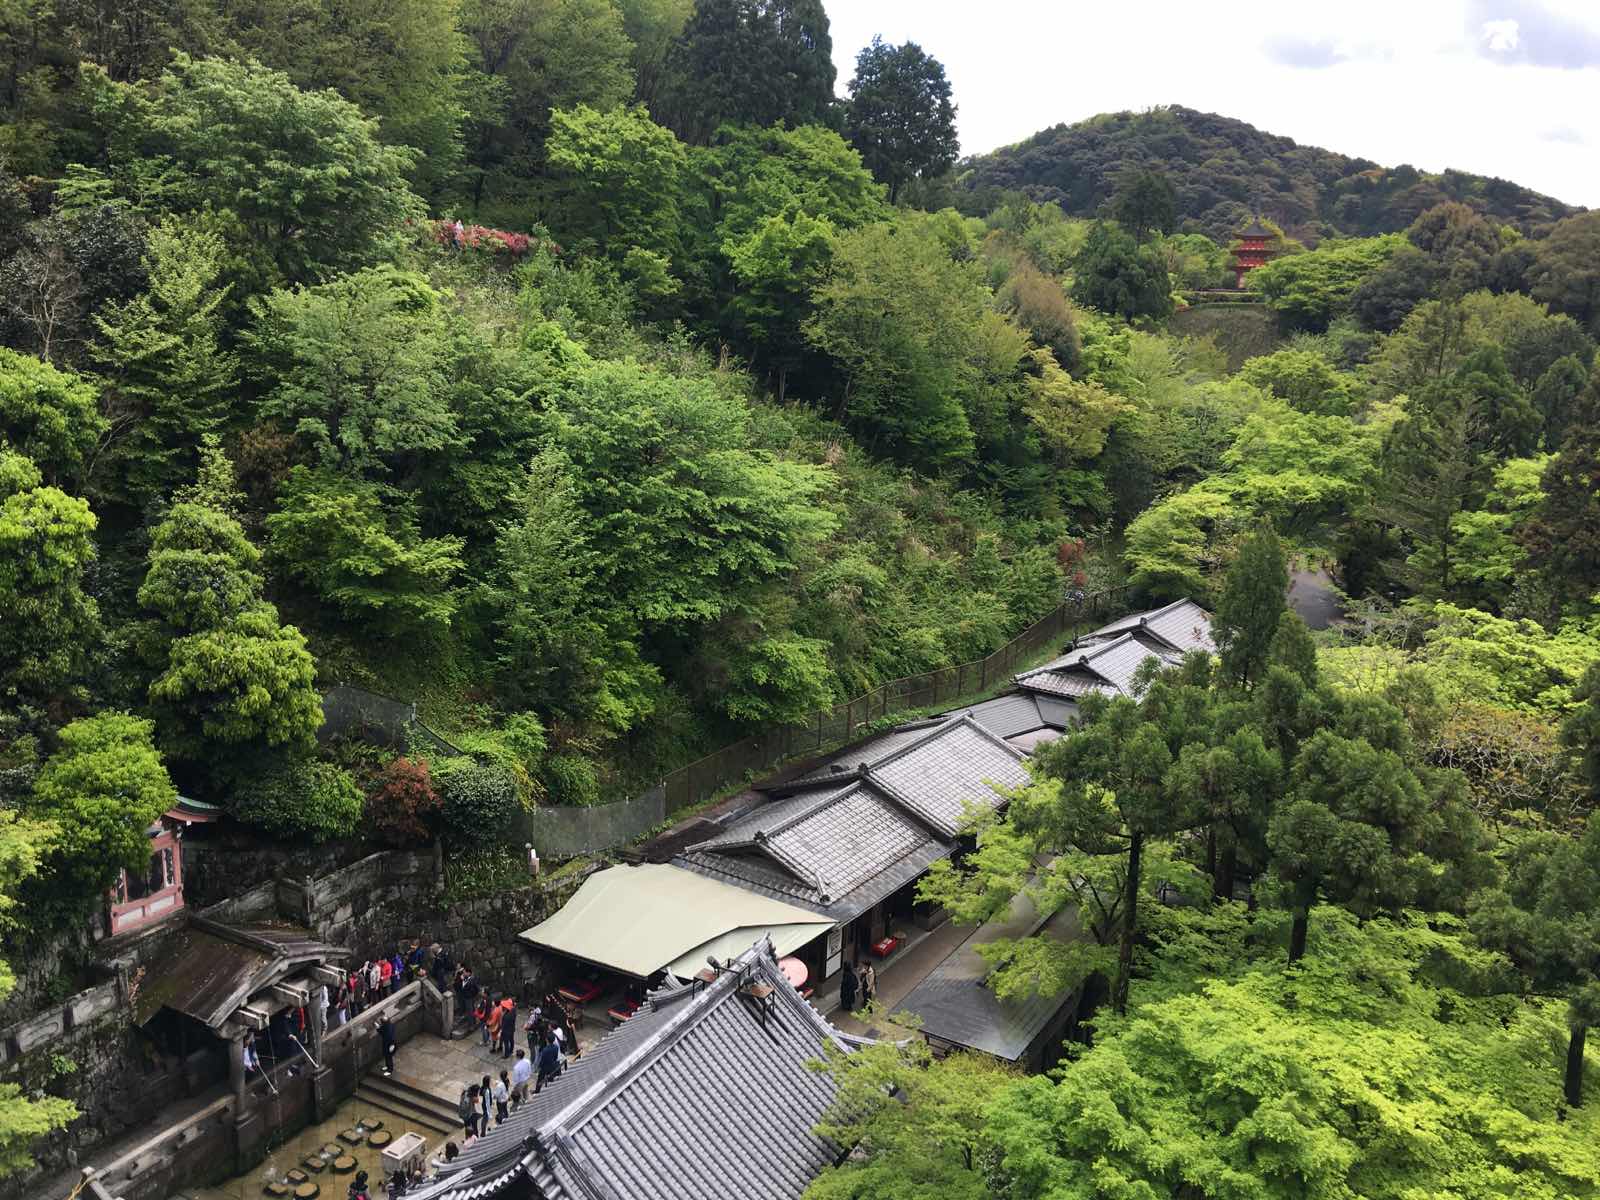 几年前来过一次京都，那时清水寺也上来过，只在门口拍了照片就走了没进去，